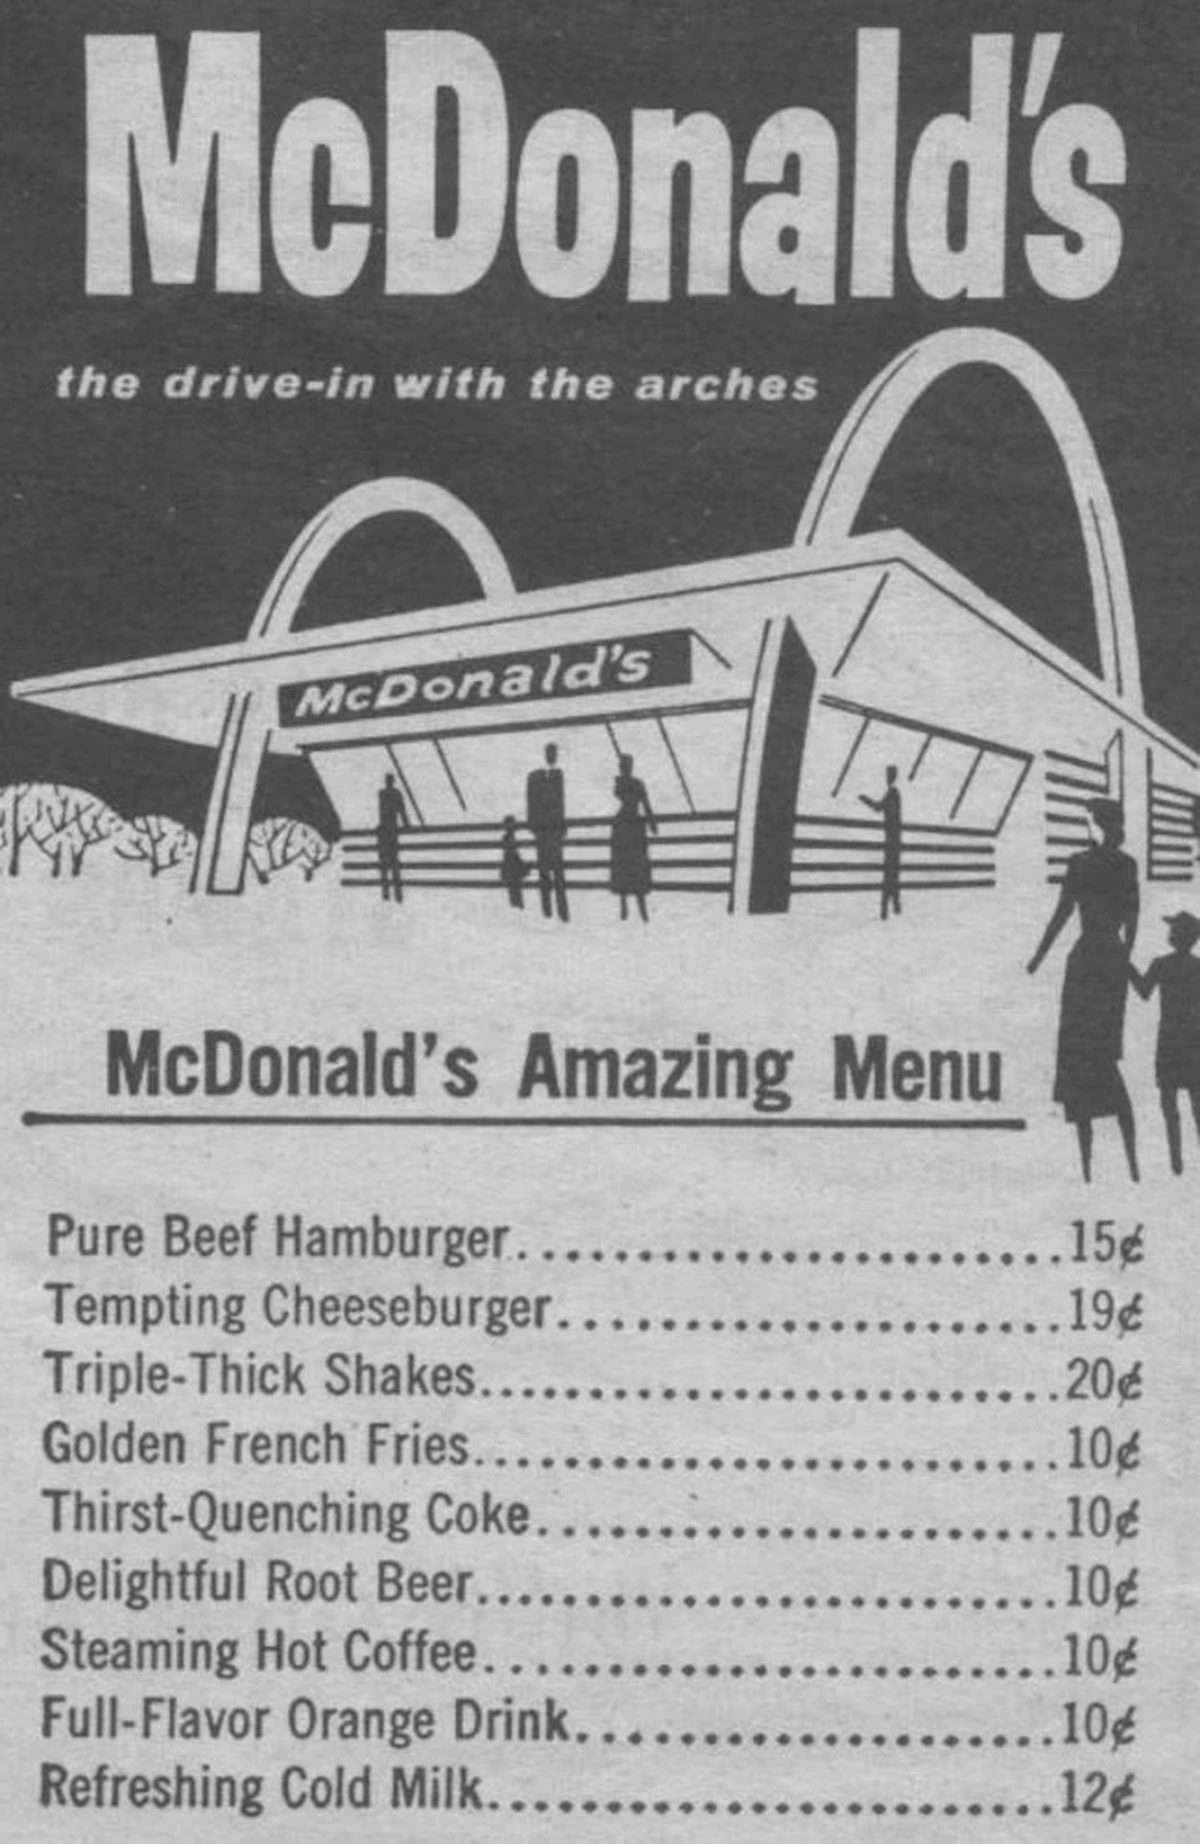 Los hermanos McDonald redujeron costos al eliminar a las meseras y simplificar el menú a pocas opciones, entre ellas, hamburguesas, batidos y tartas de manzana.